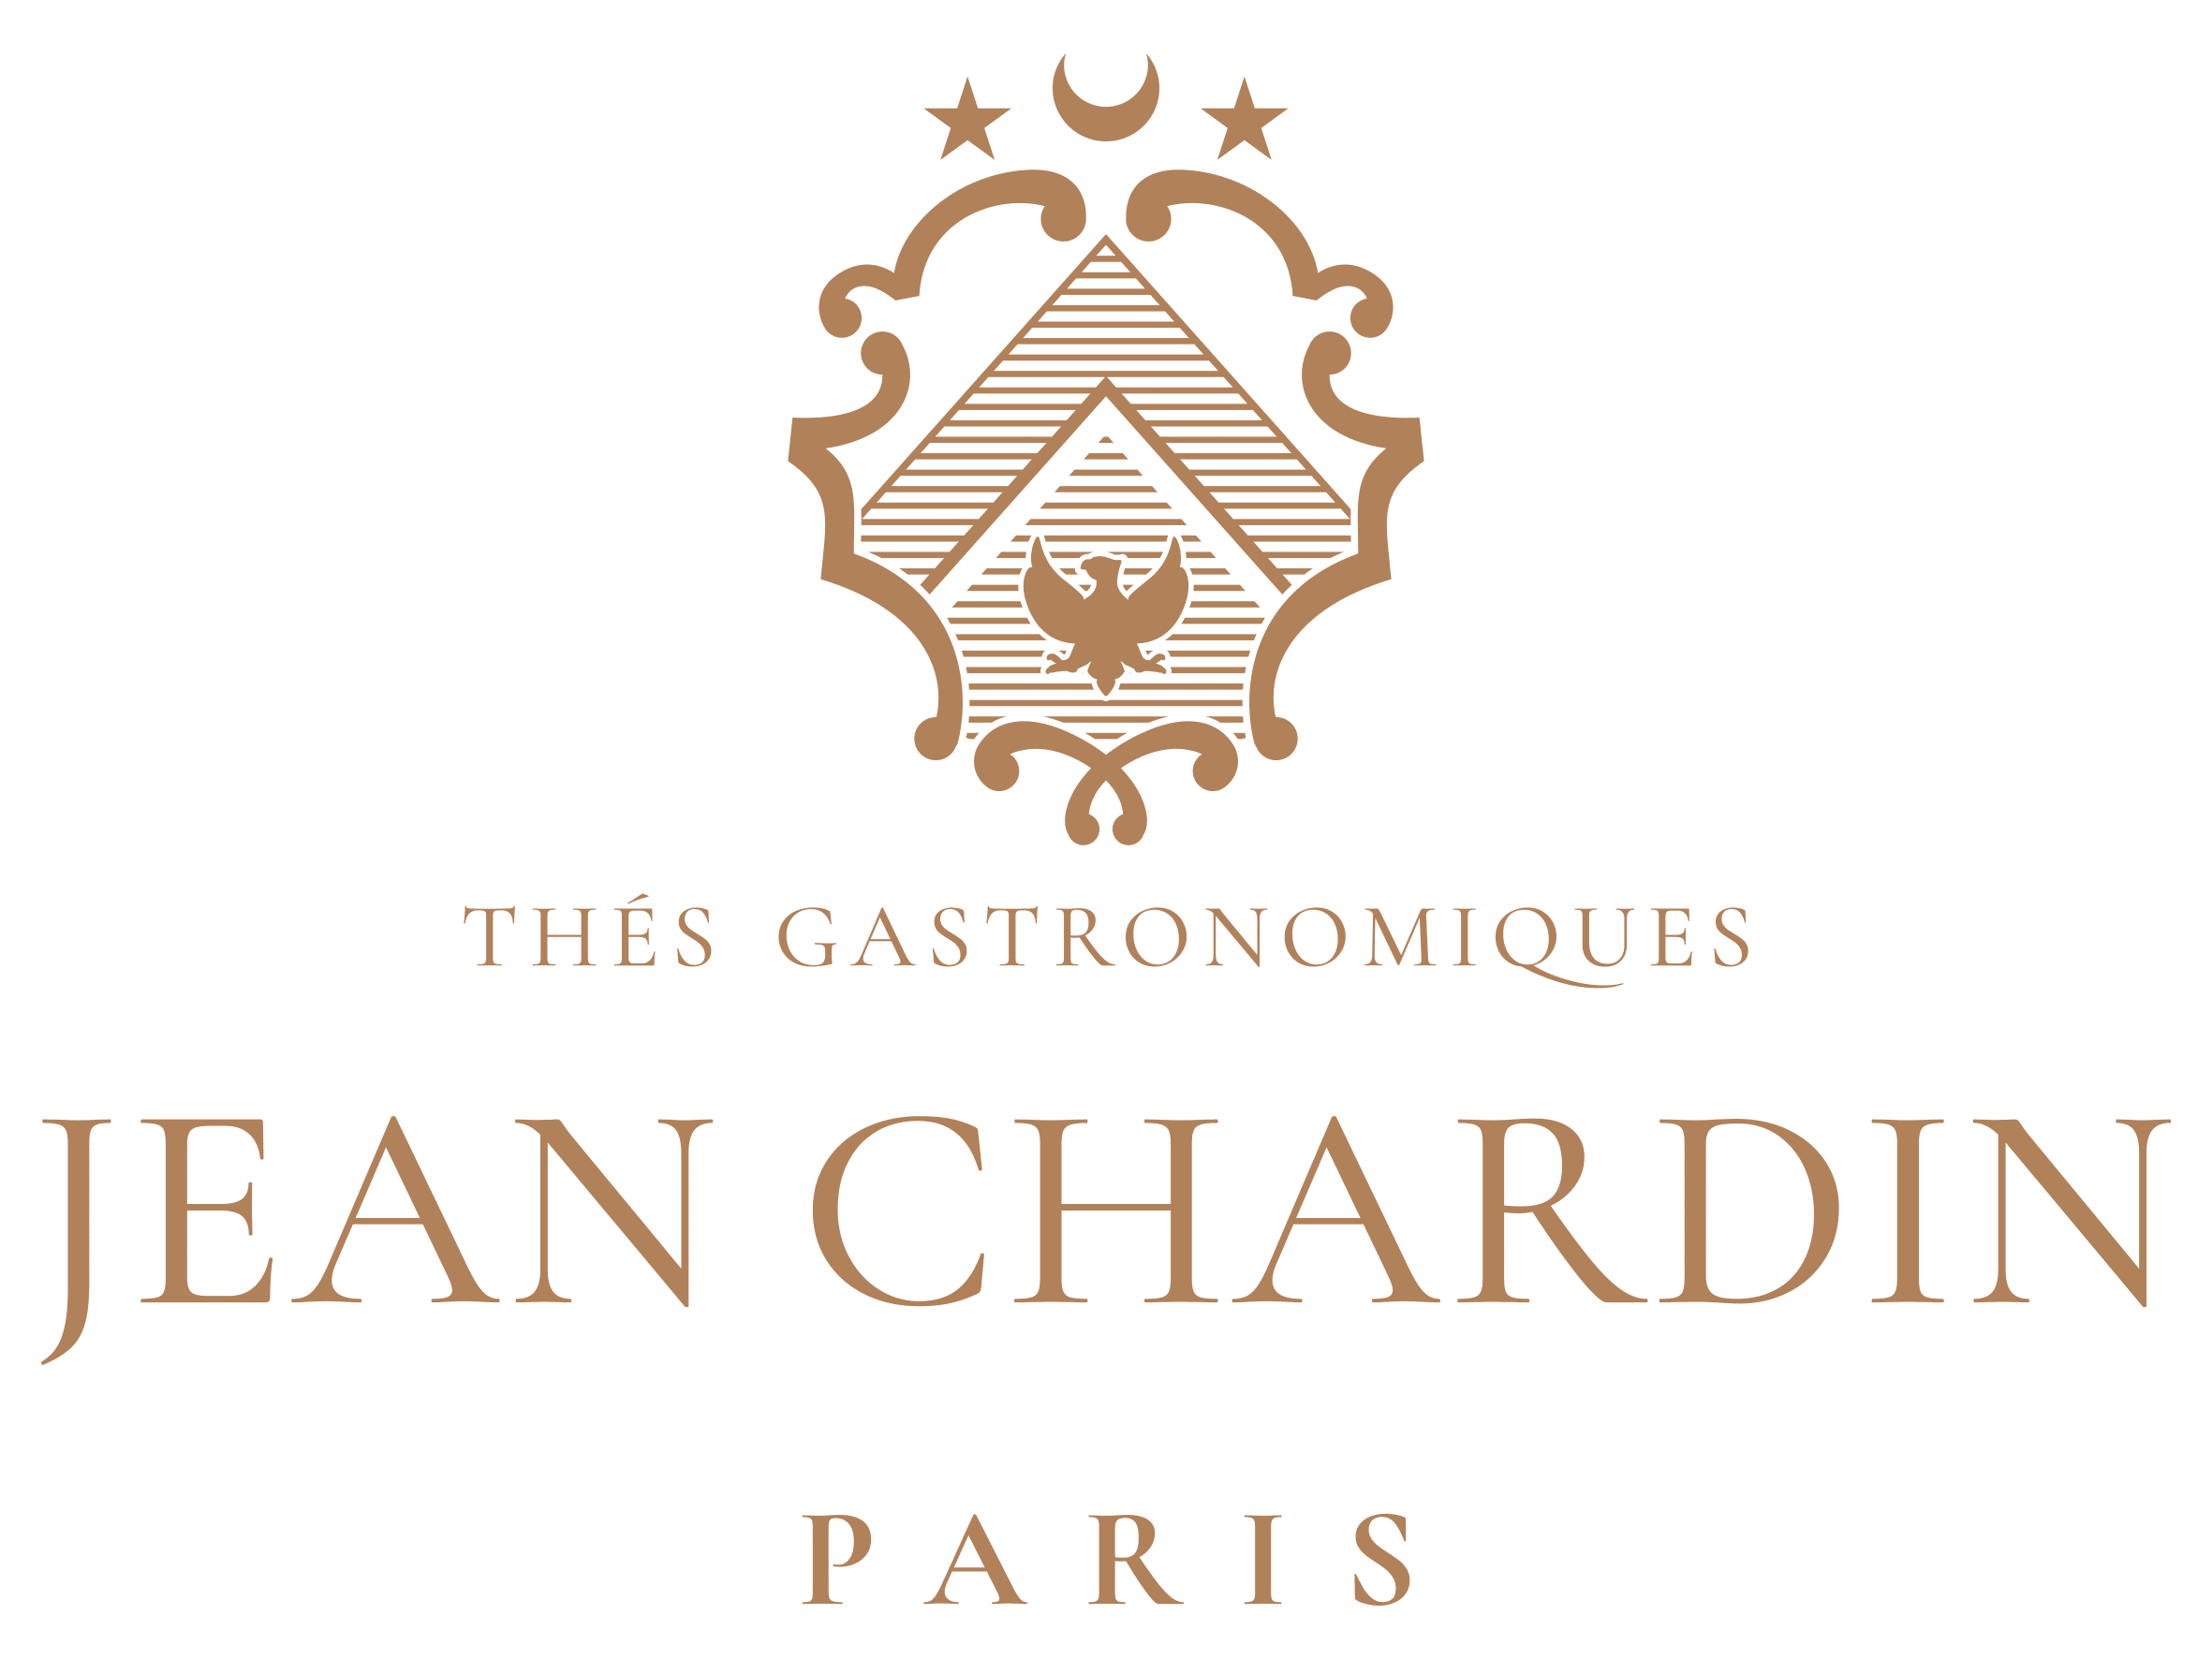 Jean Chardin